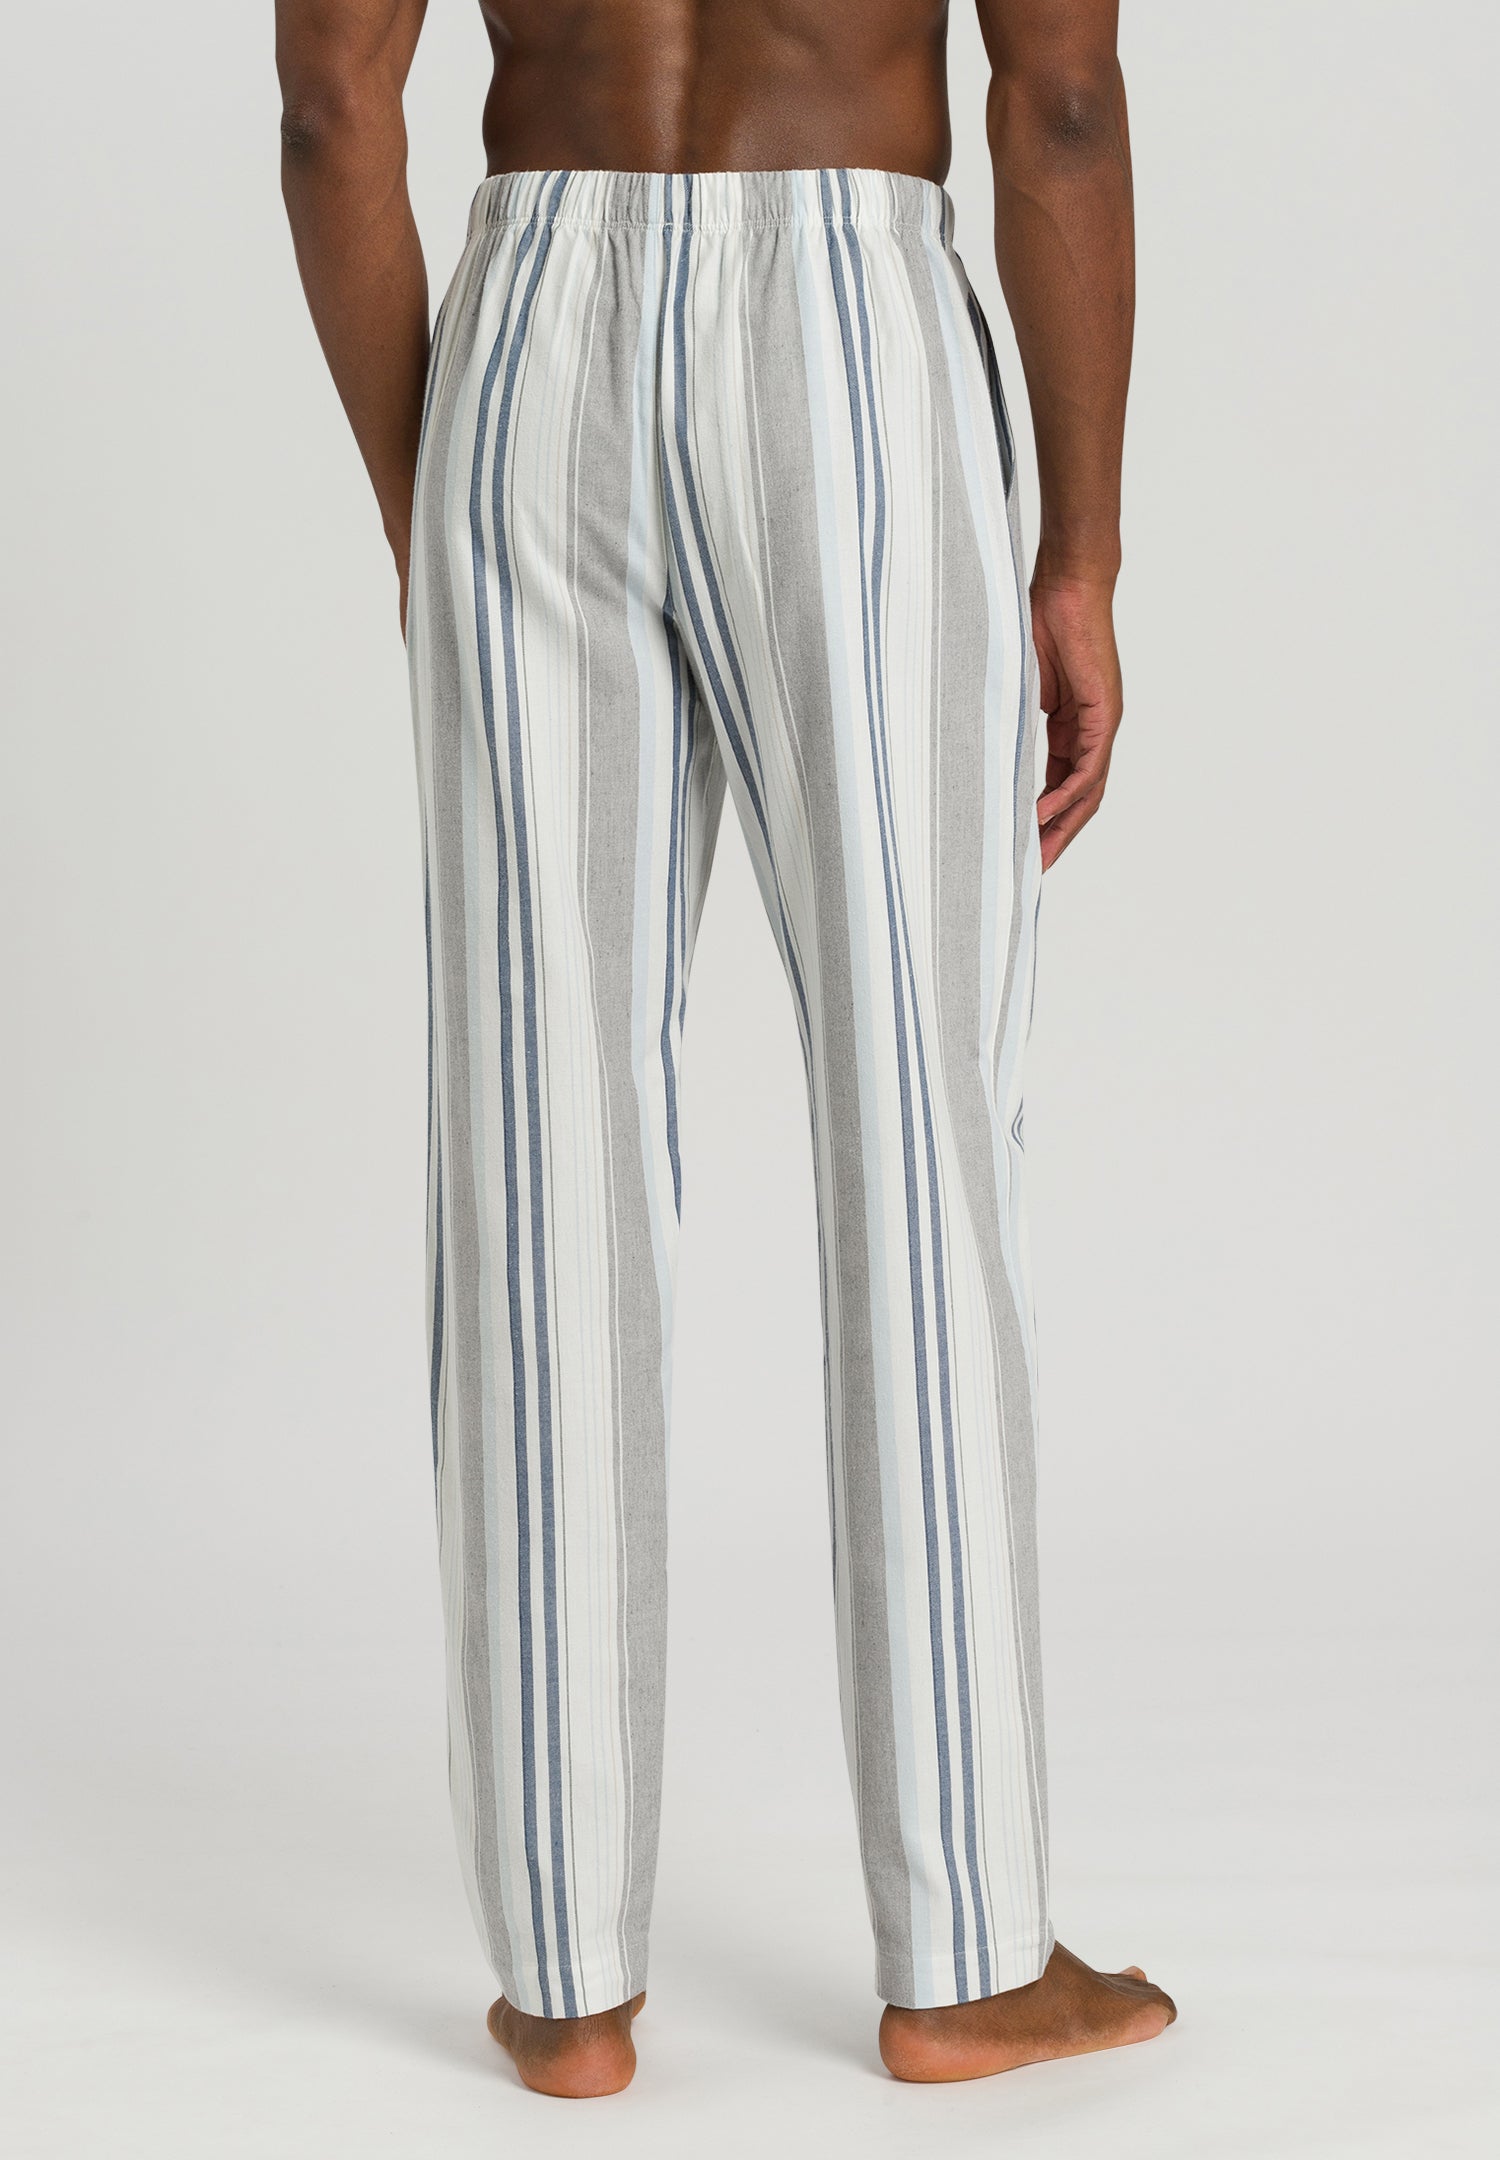 75000 Cozy Comfort Flannel Pants - 2975 Gentle Stripe